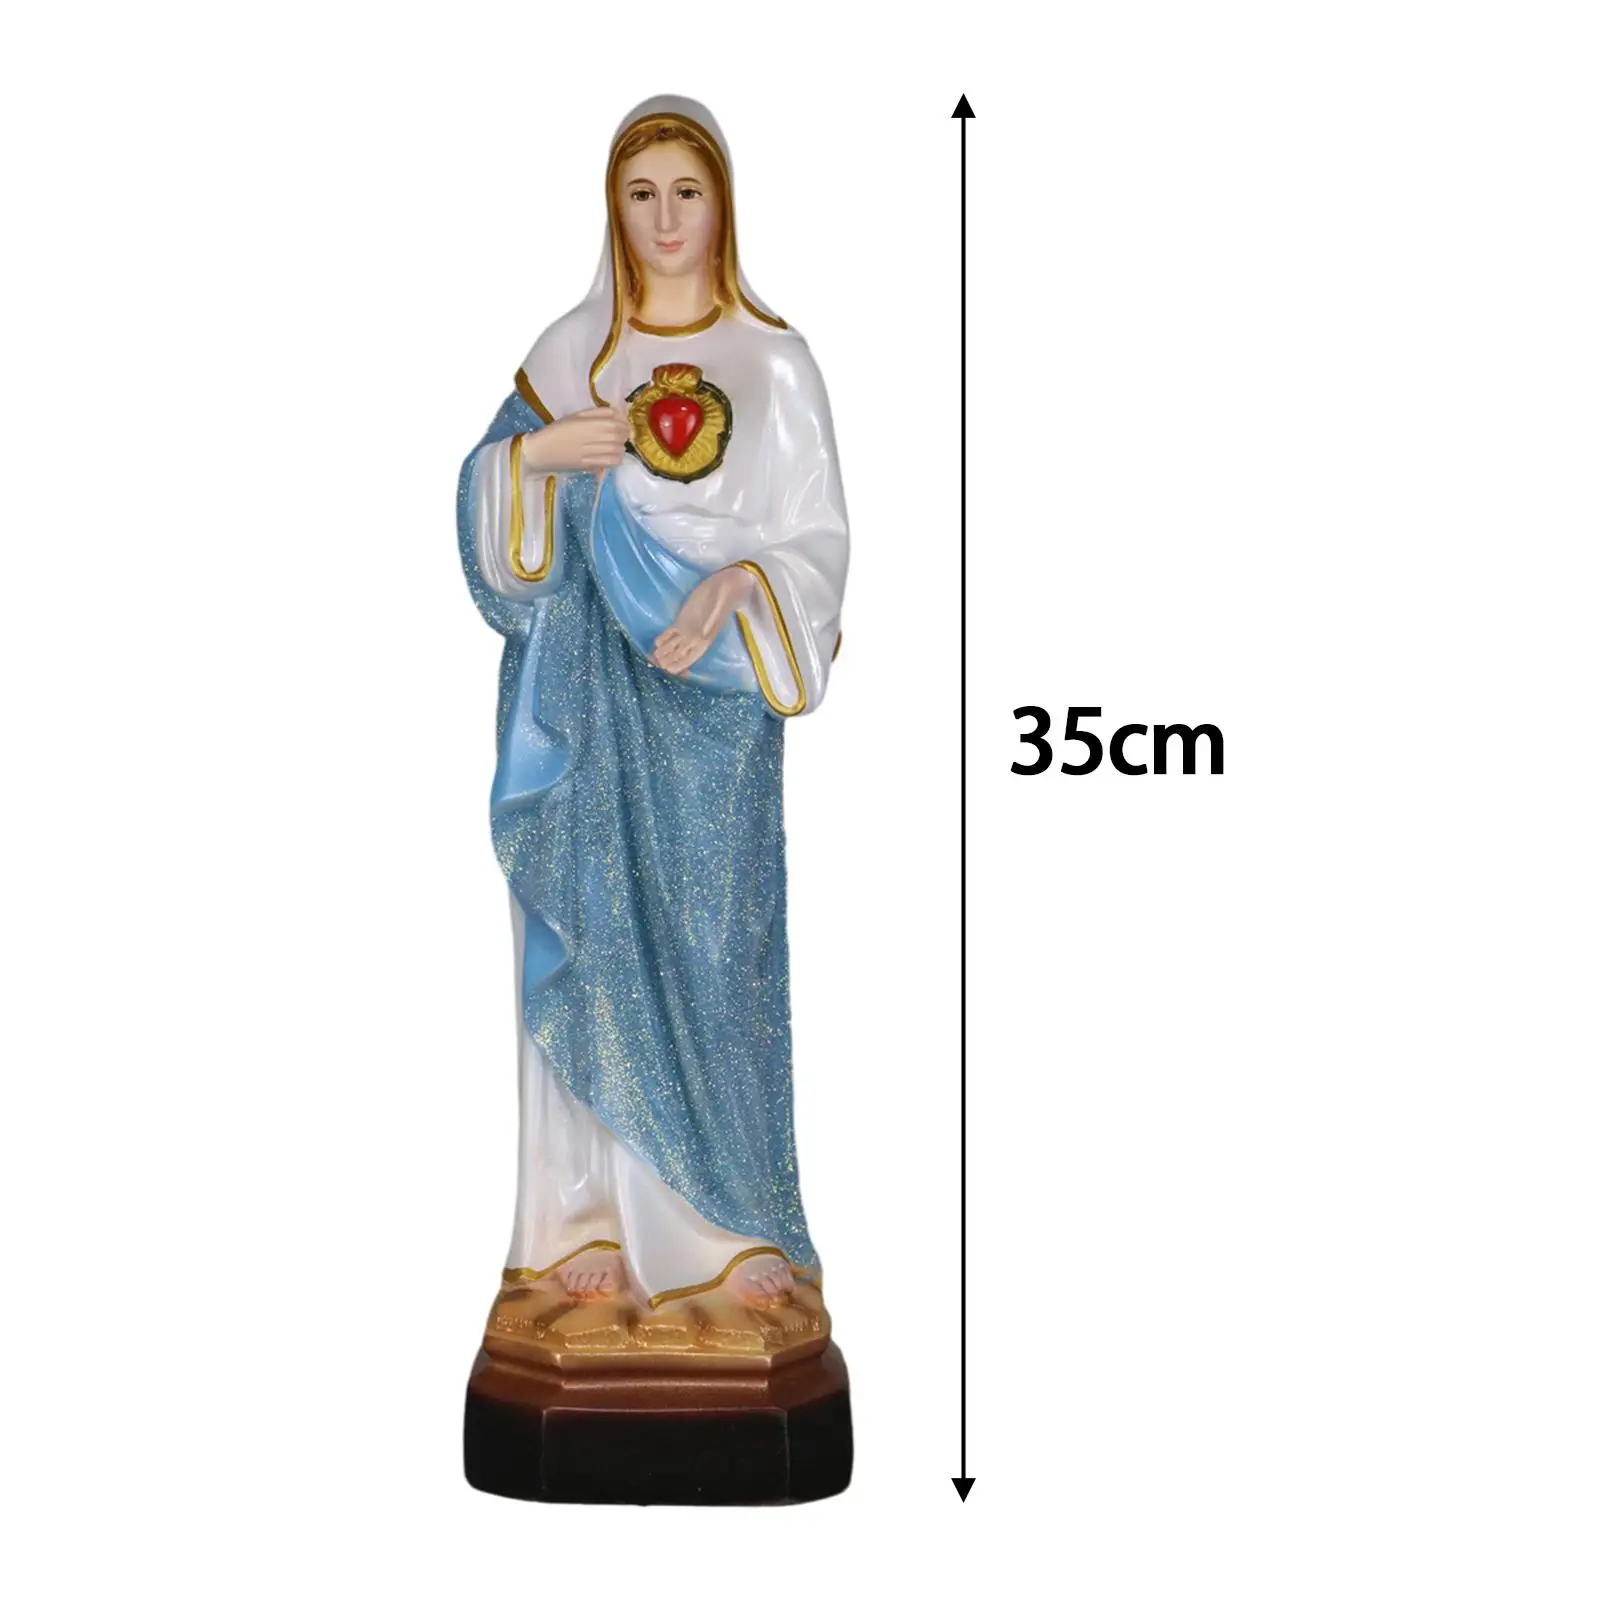 

Фигурка Святой Марии 13.78 дюймов настольный, коллекционные ремесла, религиозные подарки, декоративная католическая статуя для полки, для дома и офиса